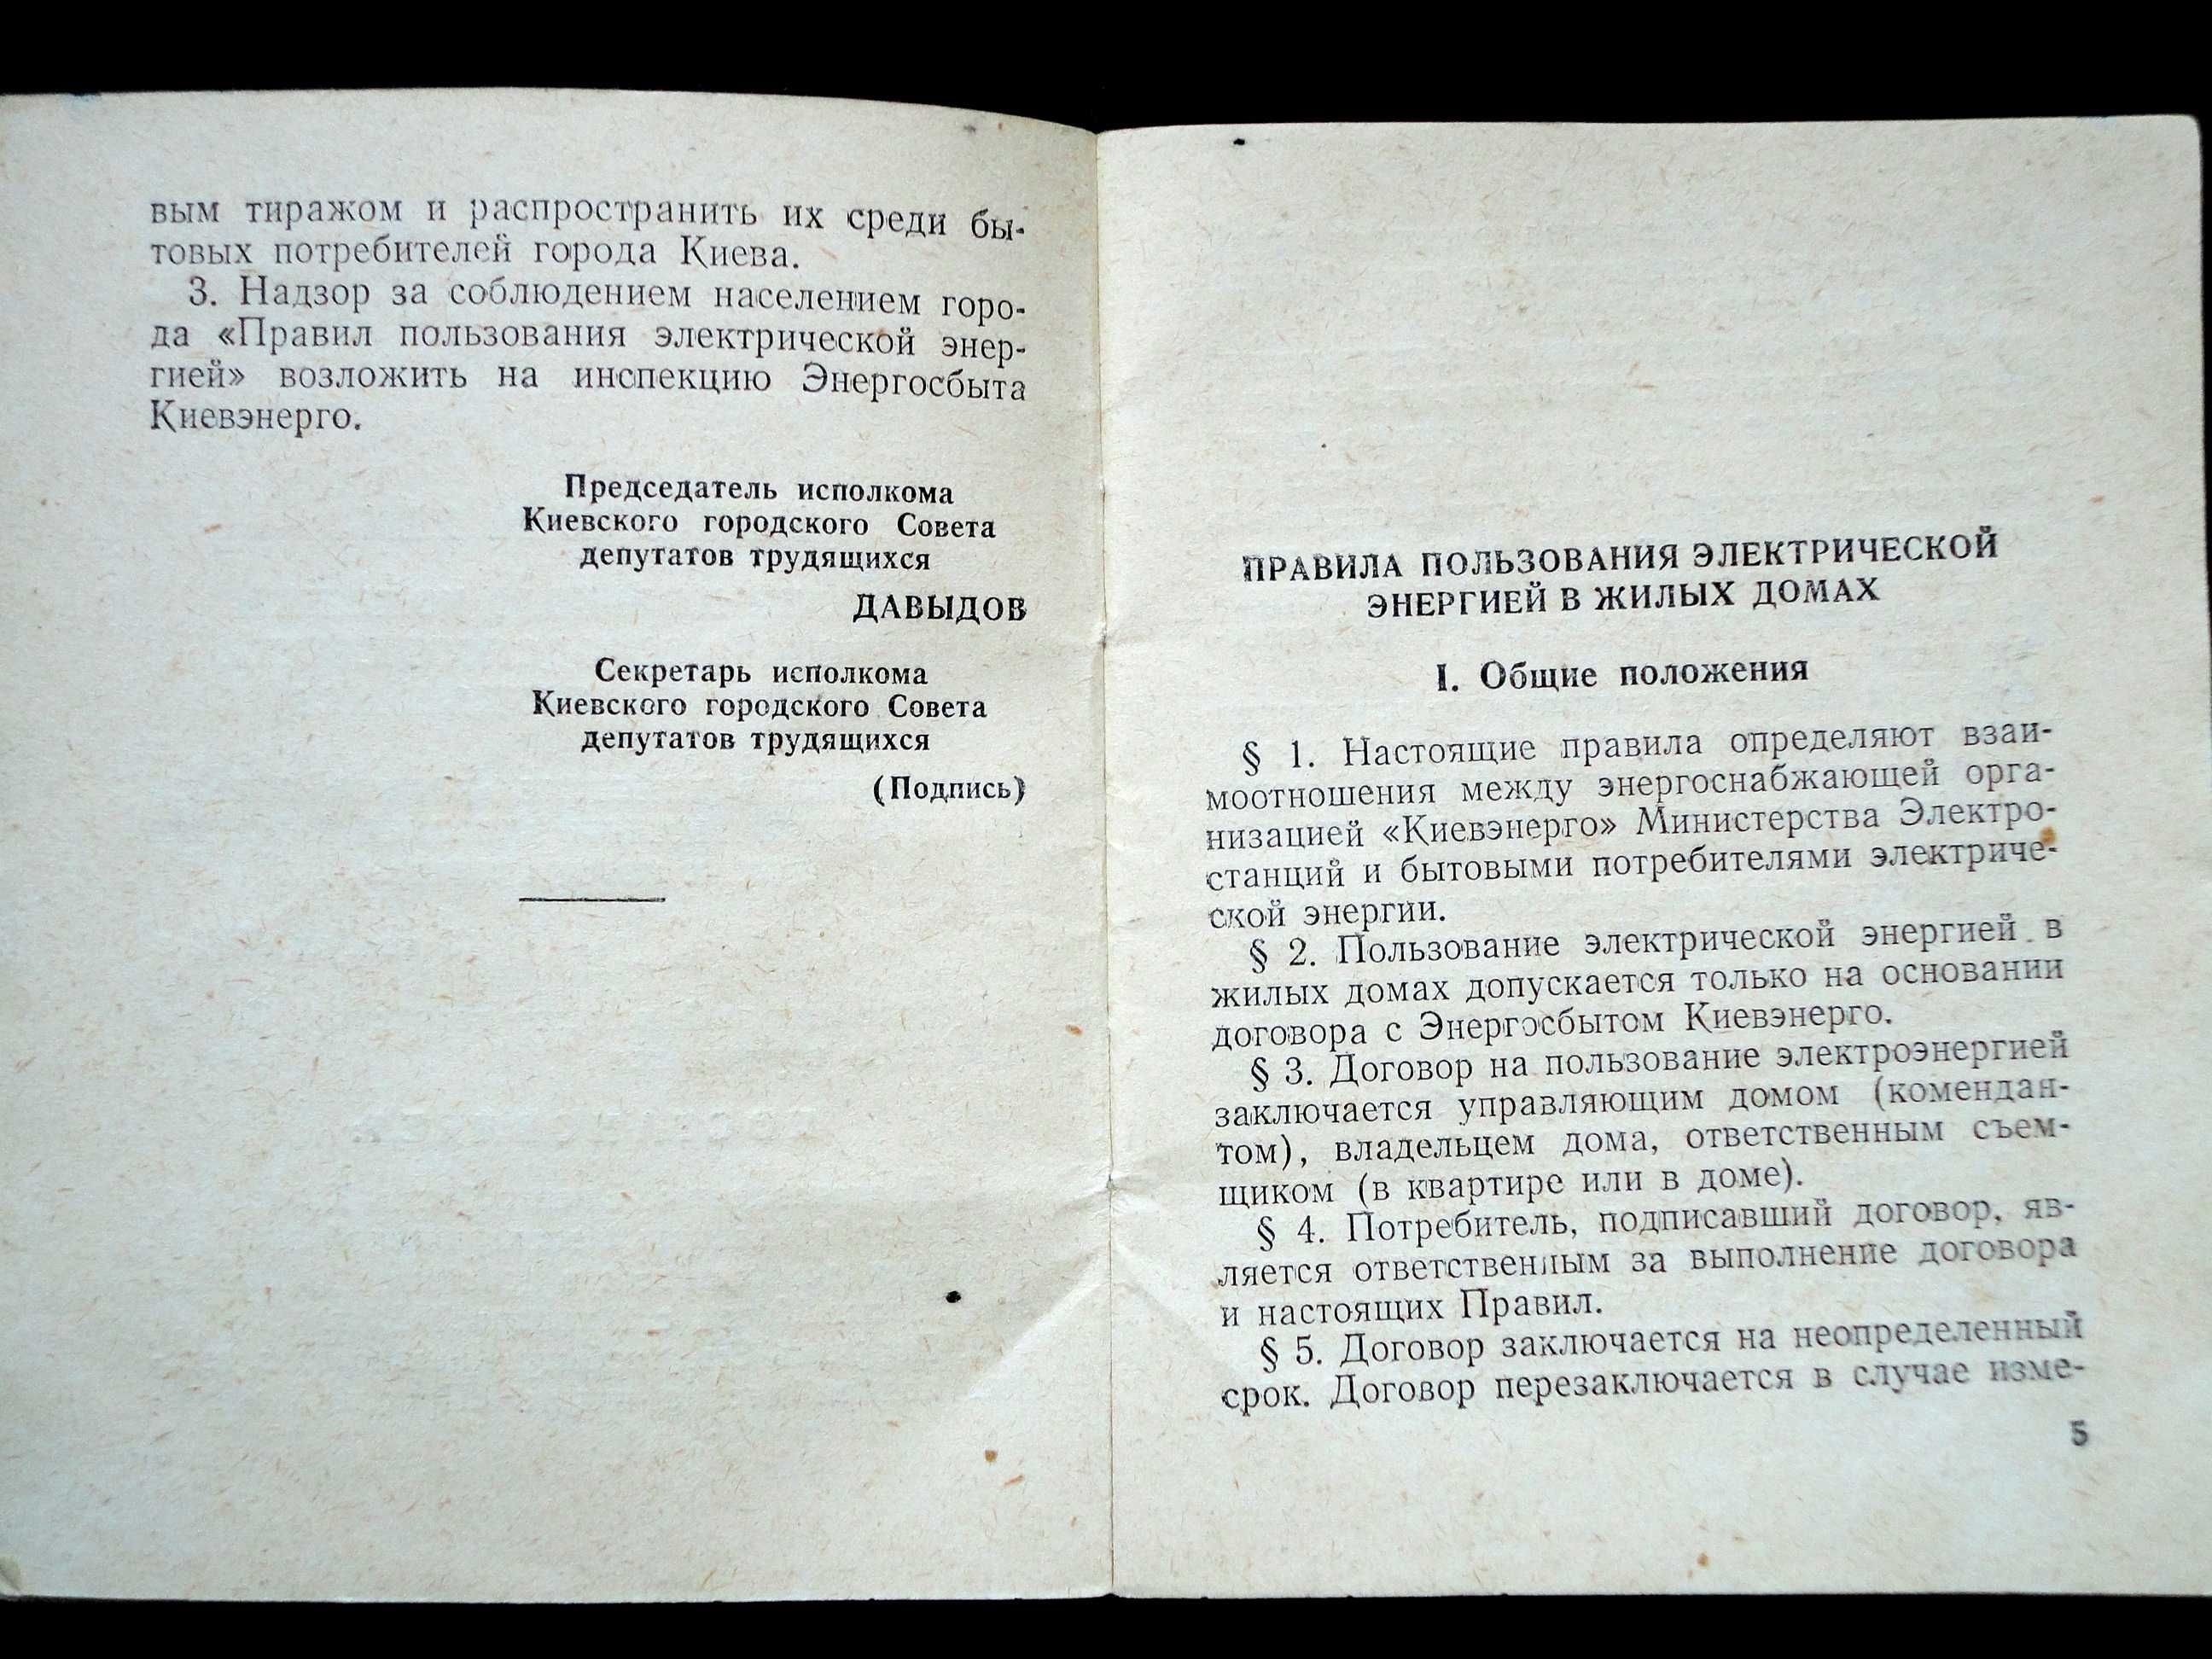 Правила пользования электроэнергией в жилых домах города Киева.1956г.